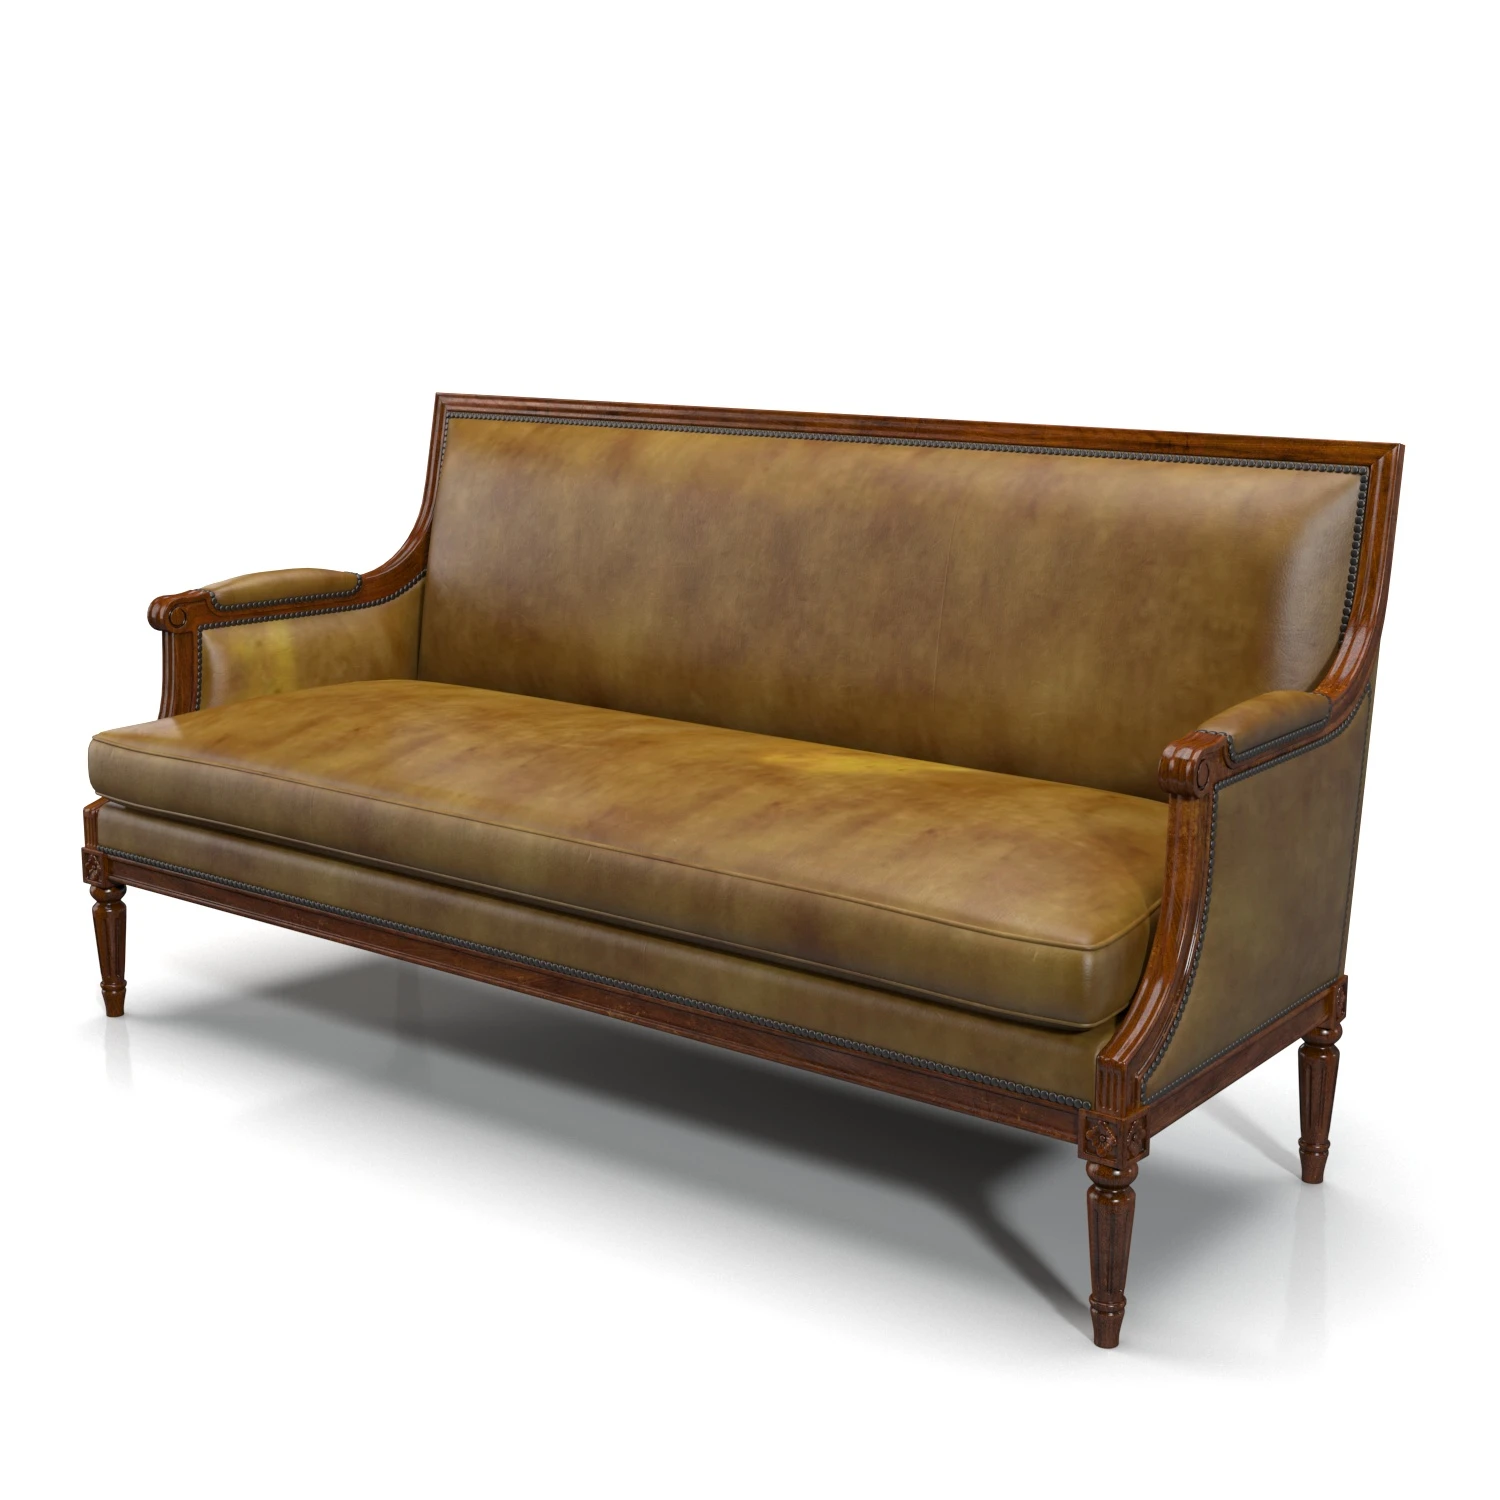 English Leather 19th Century Mahogany Sofa 3D Model_04